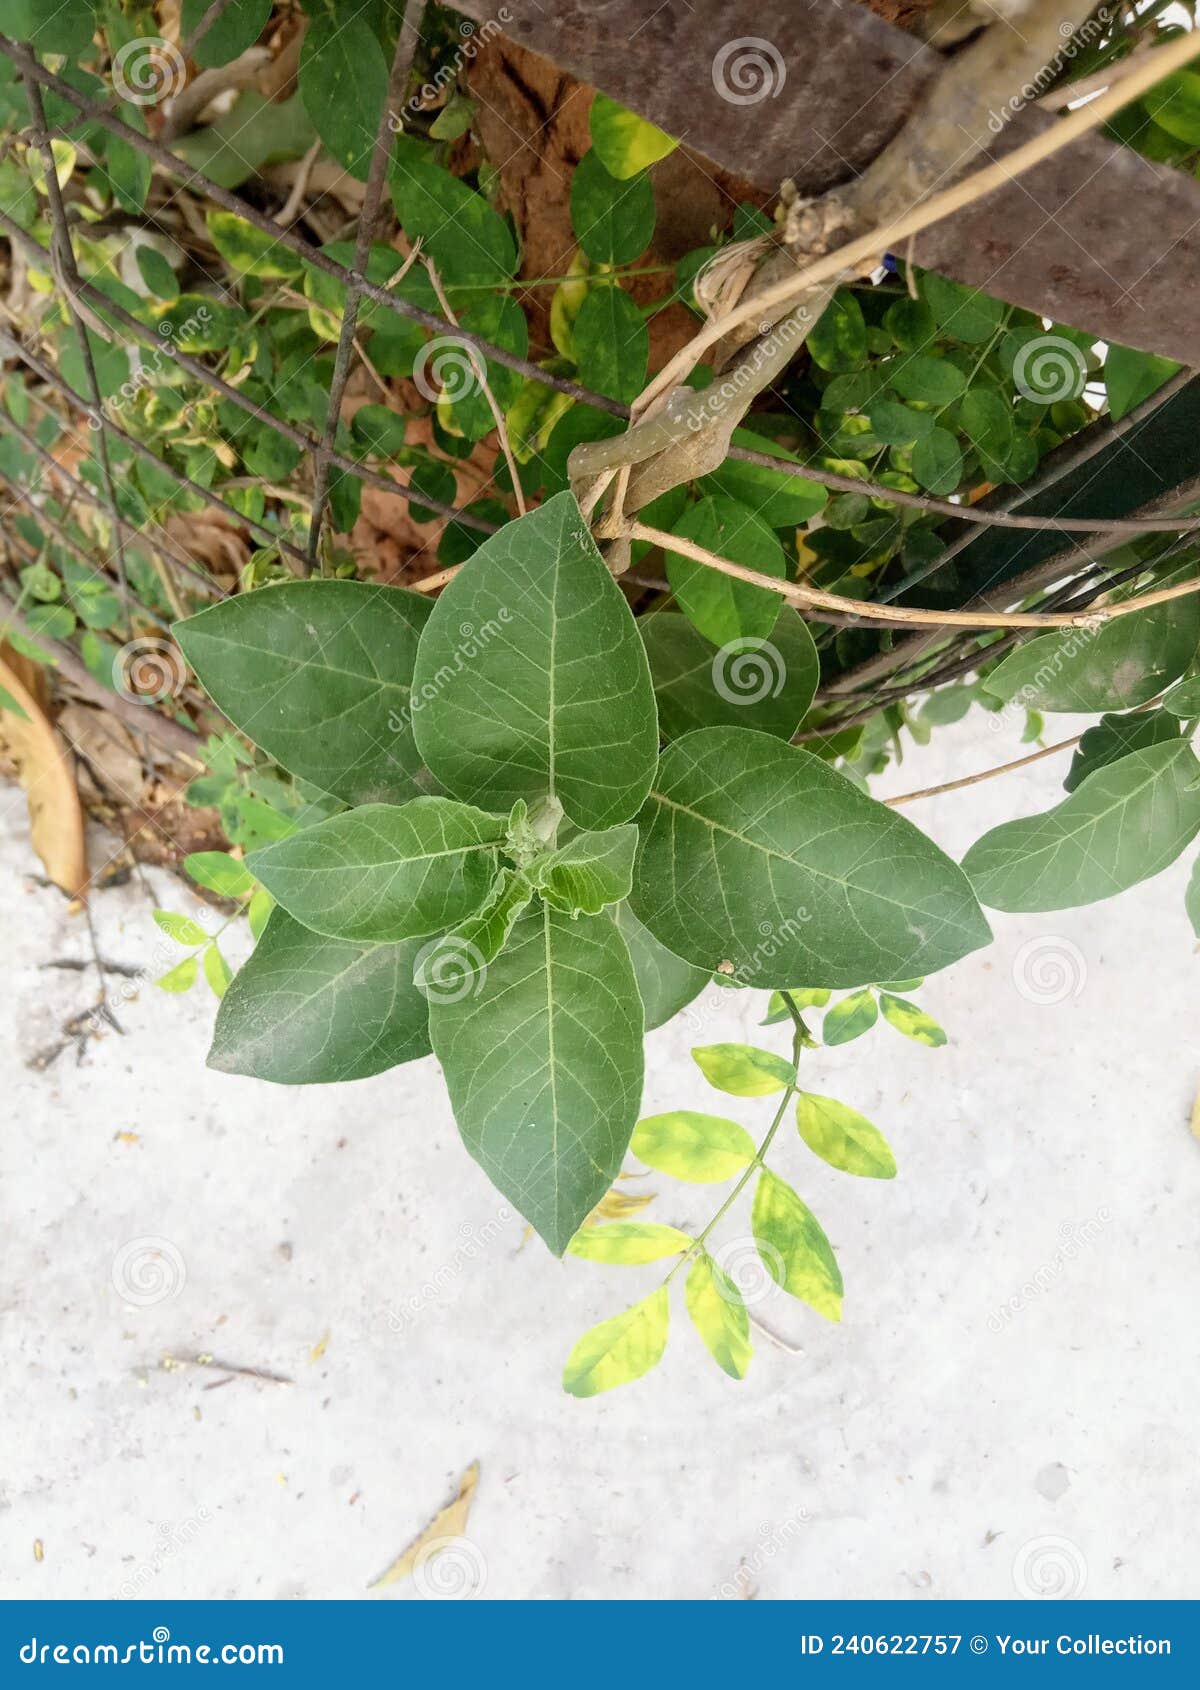 plant name is ashwagandha